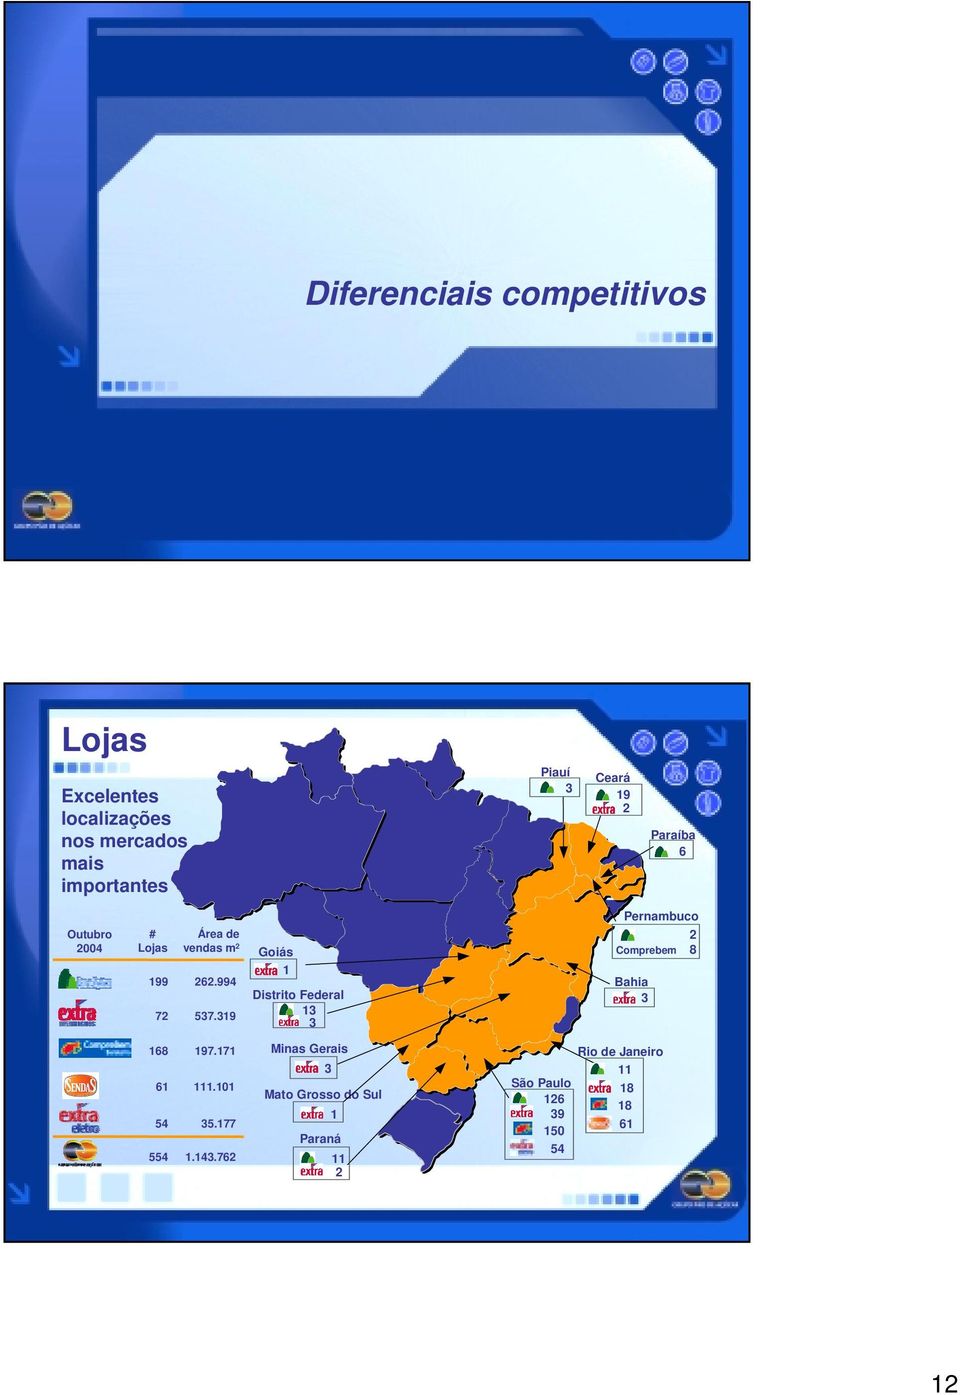 319 Goiás 1 Distrito Federal 13 3 Pernambuco 2 Comprebem 8 Bahia 3 168 197.171 61 111.